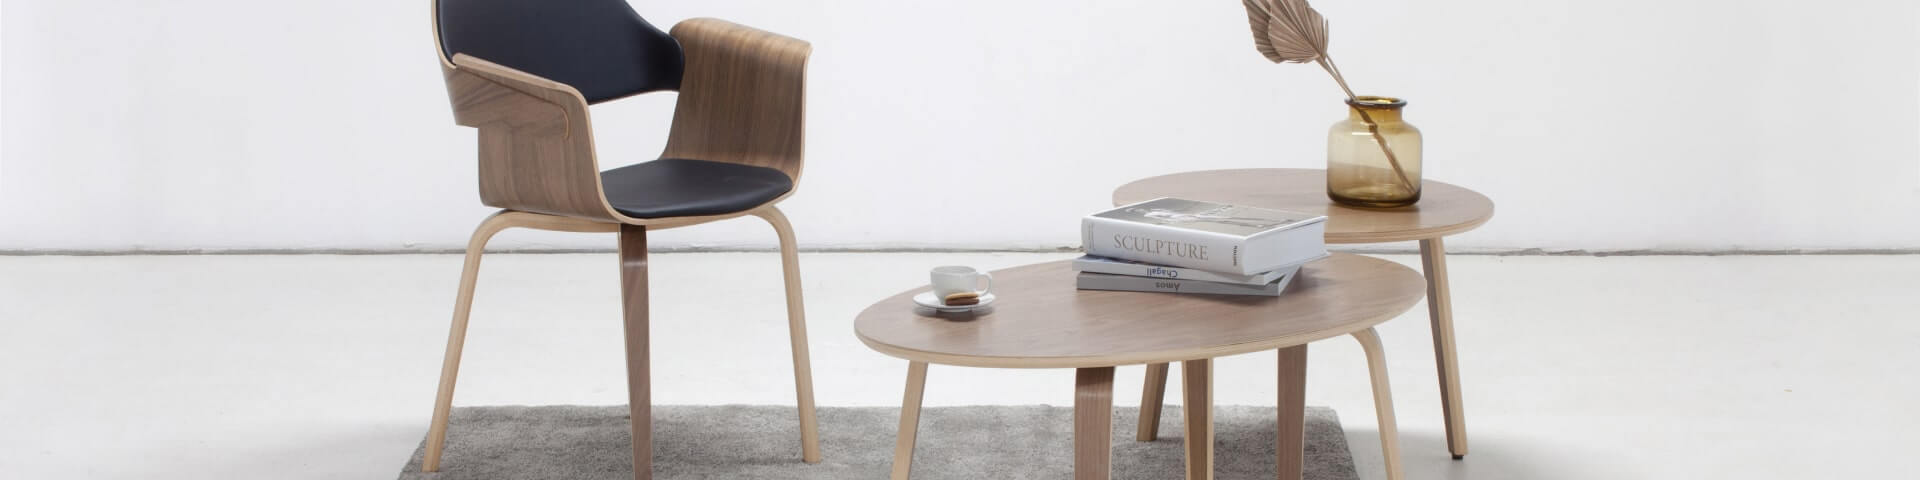 Plydesign's KORVET Barstool: Versatile, elegant seating for cafes, bars, or modern kitchens.